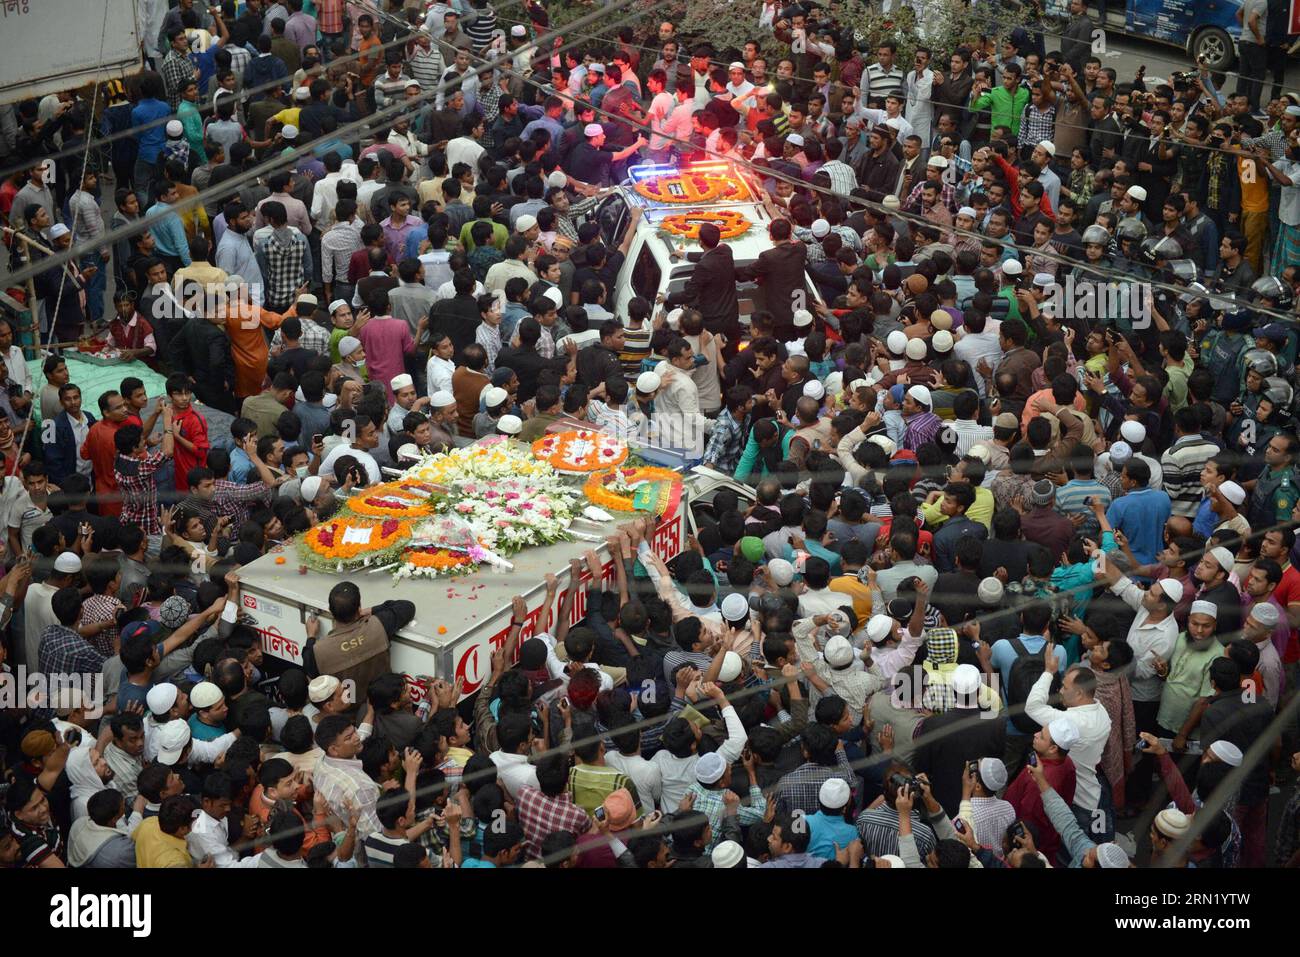 (150127) -- DHAKA, 27 janvier 2015 -- des millions de personnes assistent aux funérailles d'Arafat Rahman Koko, fils de l'ancien premier ministre bangladais Khaleda Zia, à la mosquée nationale de Dhaka, Bangladesh, le 27 janvier 2015. Le plus jeune fils de l'ex-Premier ministre bangladais Khaleda Zia est décédé samedi dans un hôpital en Malaisie. BANGLADESH-DHAKA-FILS DE L'ANCIEN PM-FUNÉRAILLES SharifulxIslam PUBLICATIONxNOTxINxCHN Dhaka Jan 27 2015 millions de célébrités assistent aux funérailles d'Arafat Rahman Koko Sun de l'ancien Premier ministre bangladais Khaleda Zia À la Mosquée nationale de Dhaka Bangladesh Jan 27 2015 le Soleil de Bangla Banque D'Images